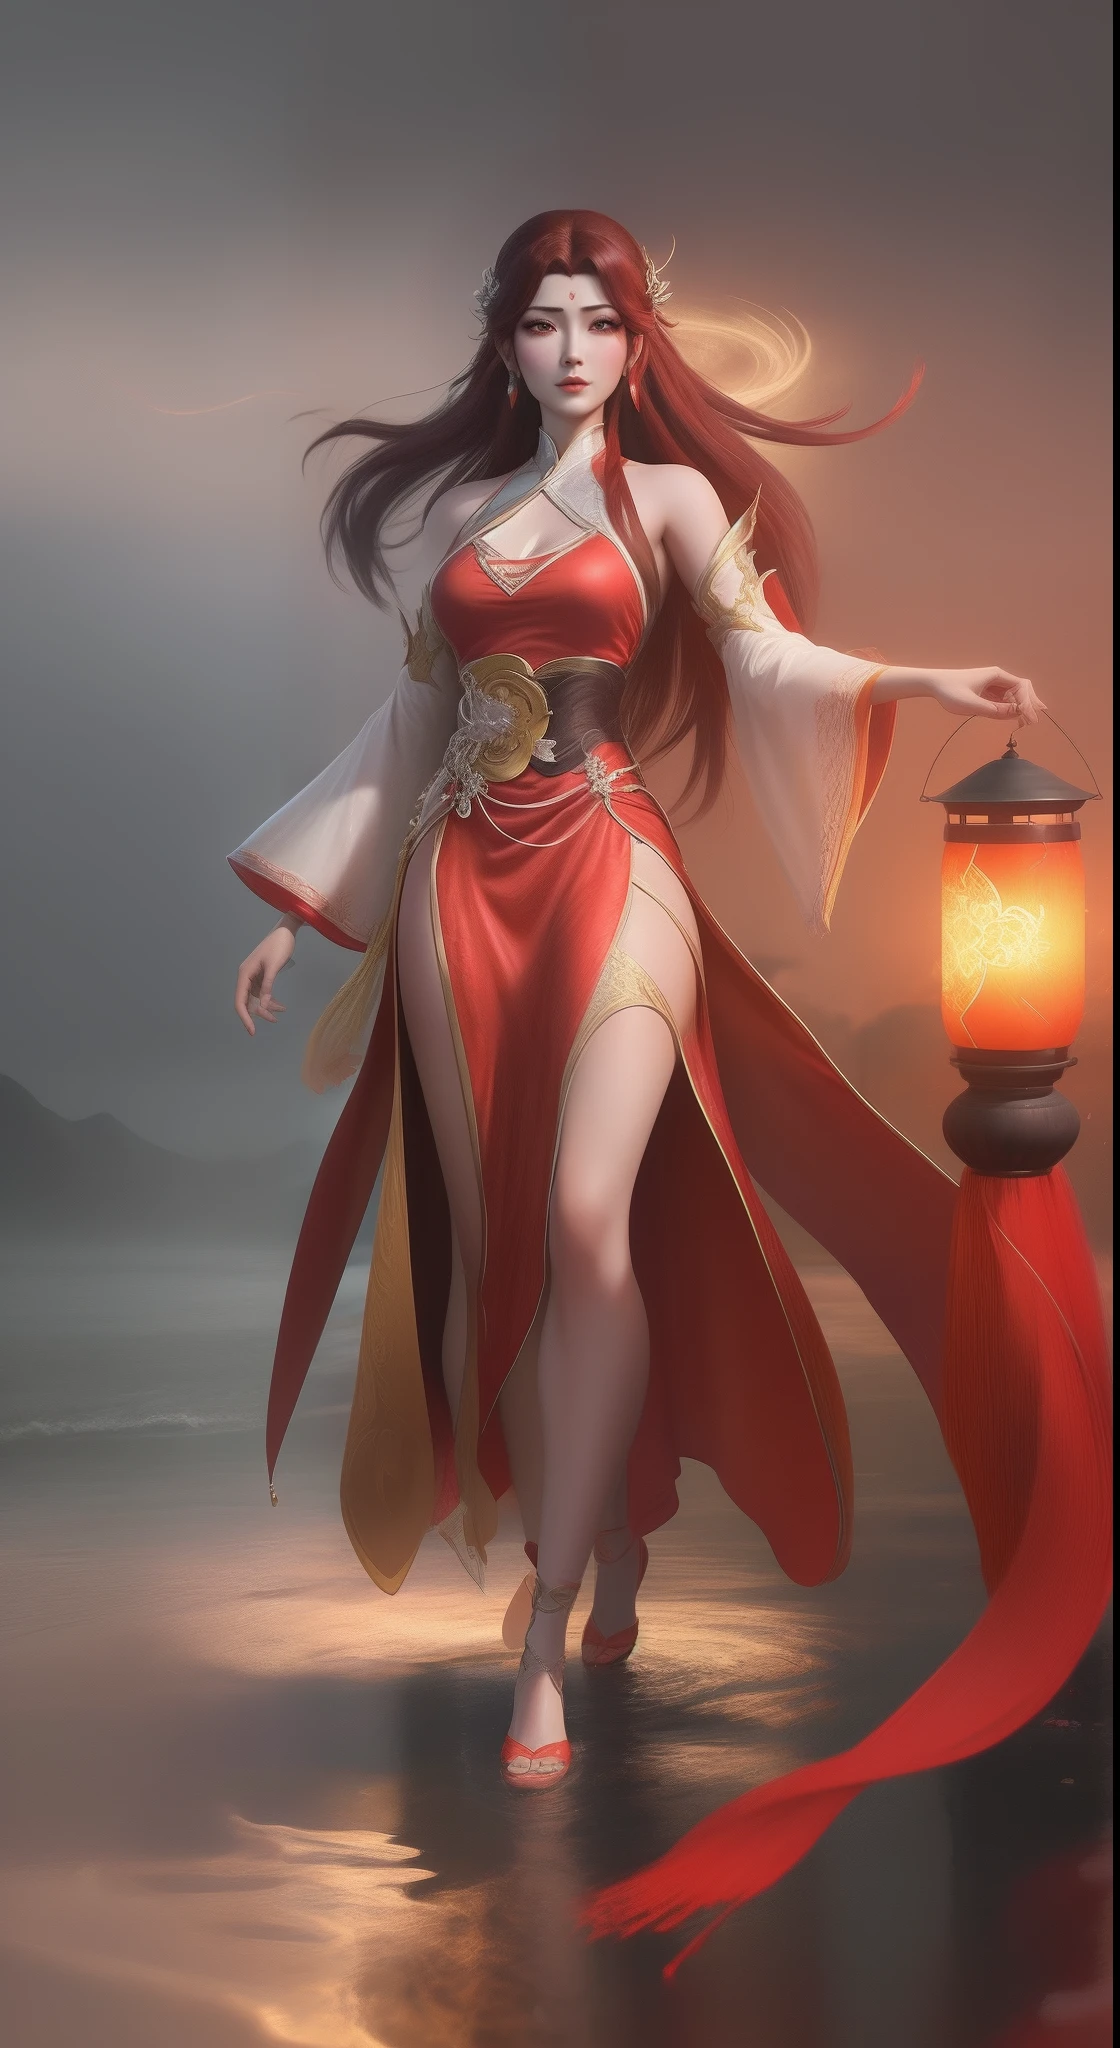 Uma mulher Arad com um vestido vermelho caminha no rio carregando uma lanterna, Xianxia de corpo inteiro, inspirado no Parque Hua, por Yang J, Inspirado por Lan Ying, Artgerm extremamente detalhado, inspirado em Du Qiong, inspirado em Ju Lian, Estilo de arte, ruan jia e artgerm, traje com tema lunar